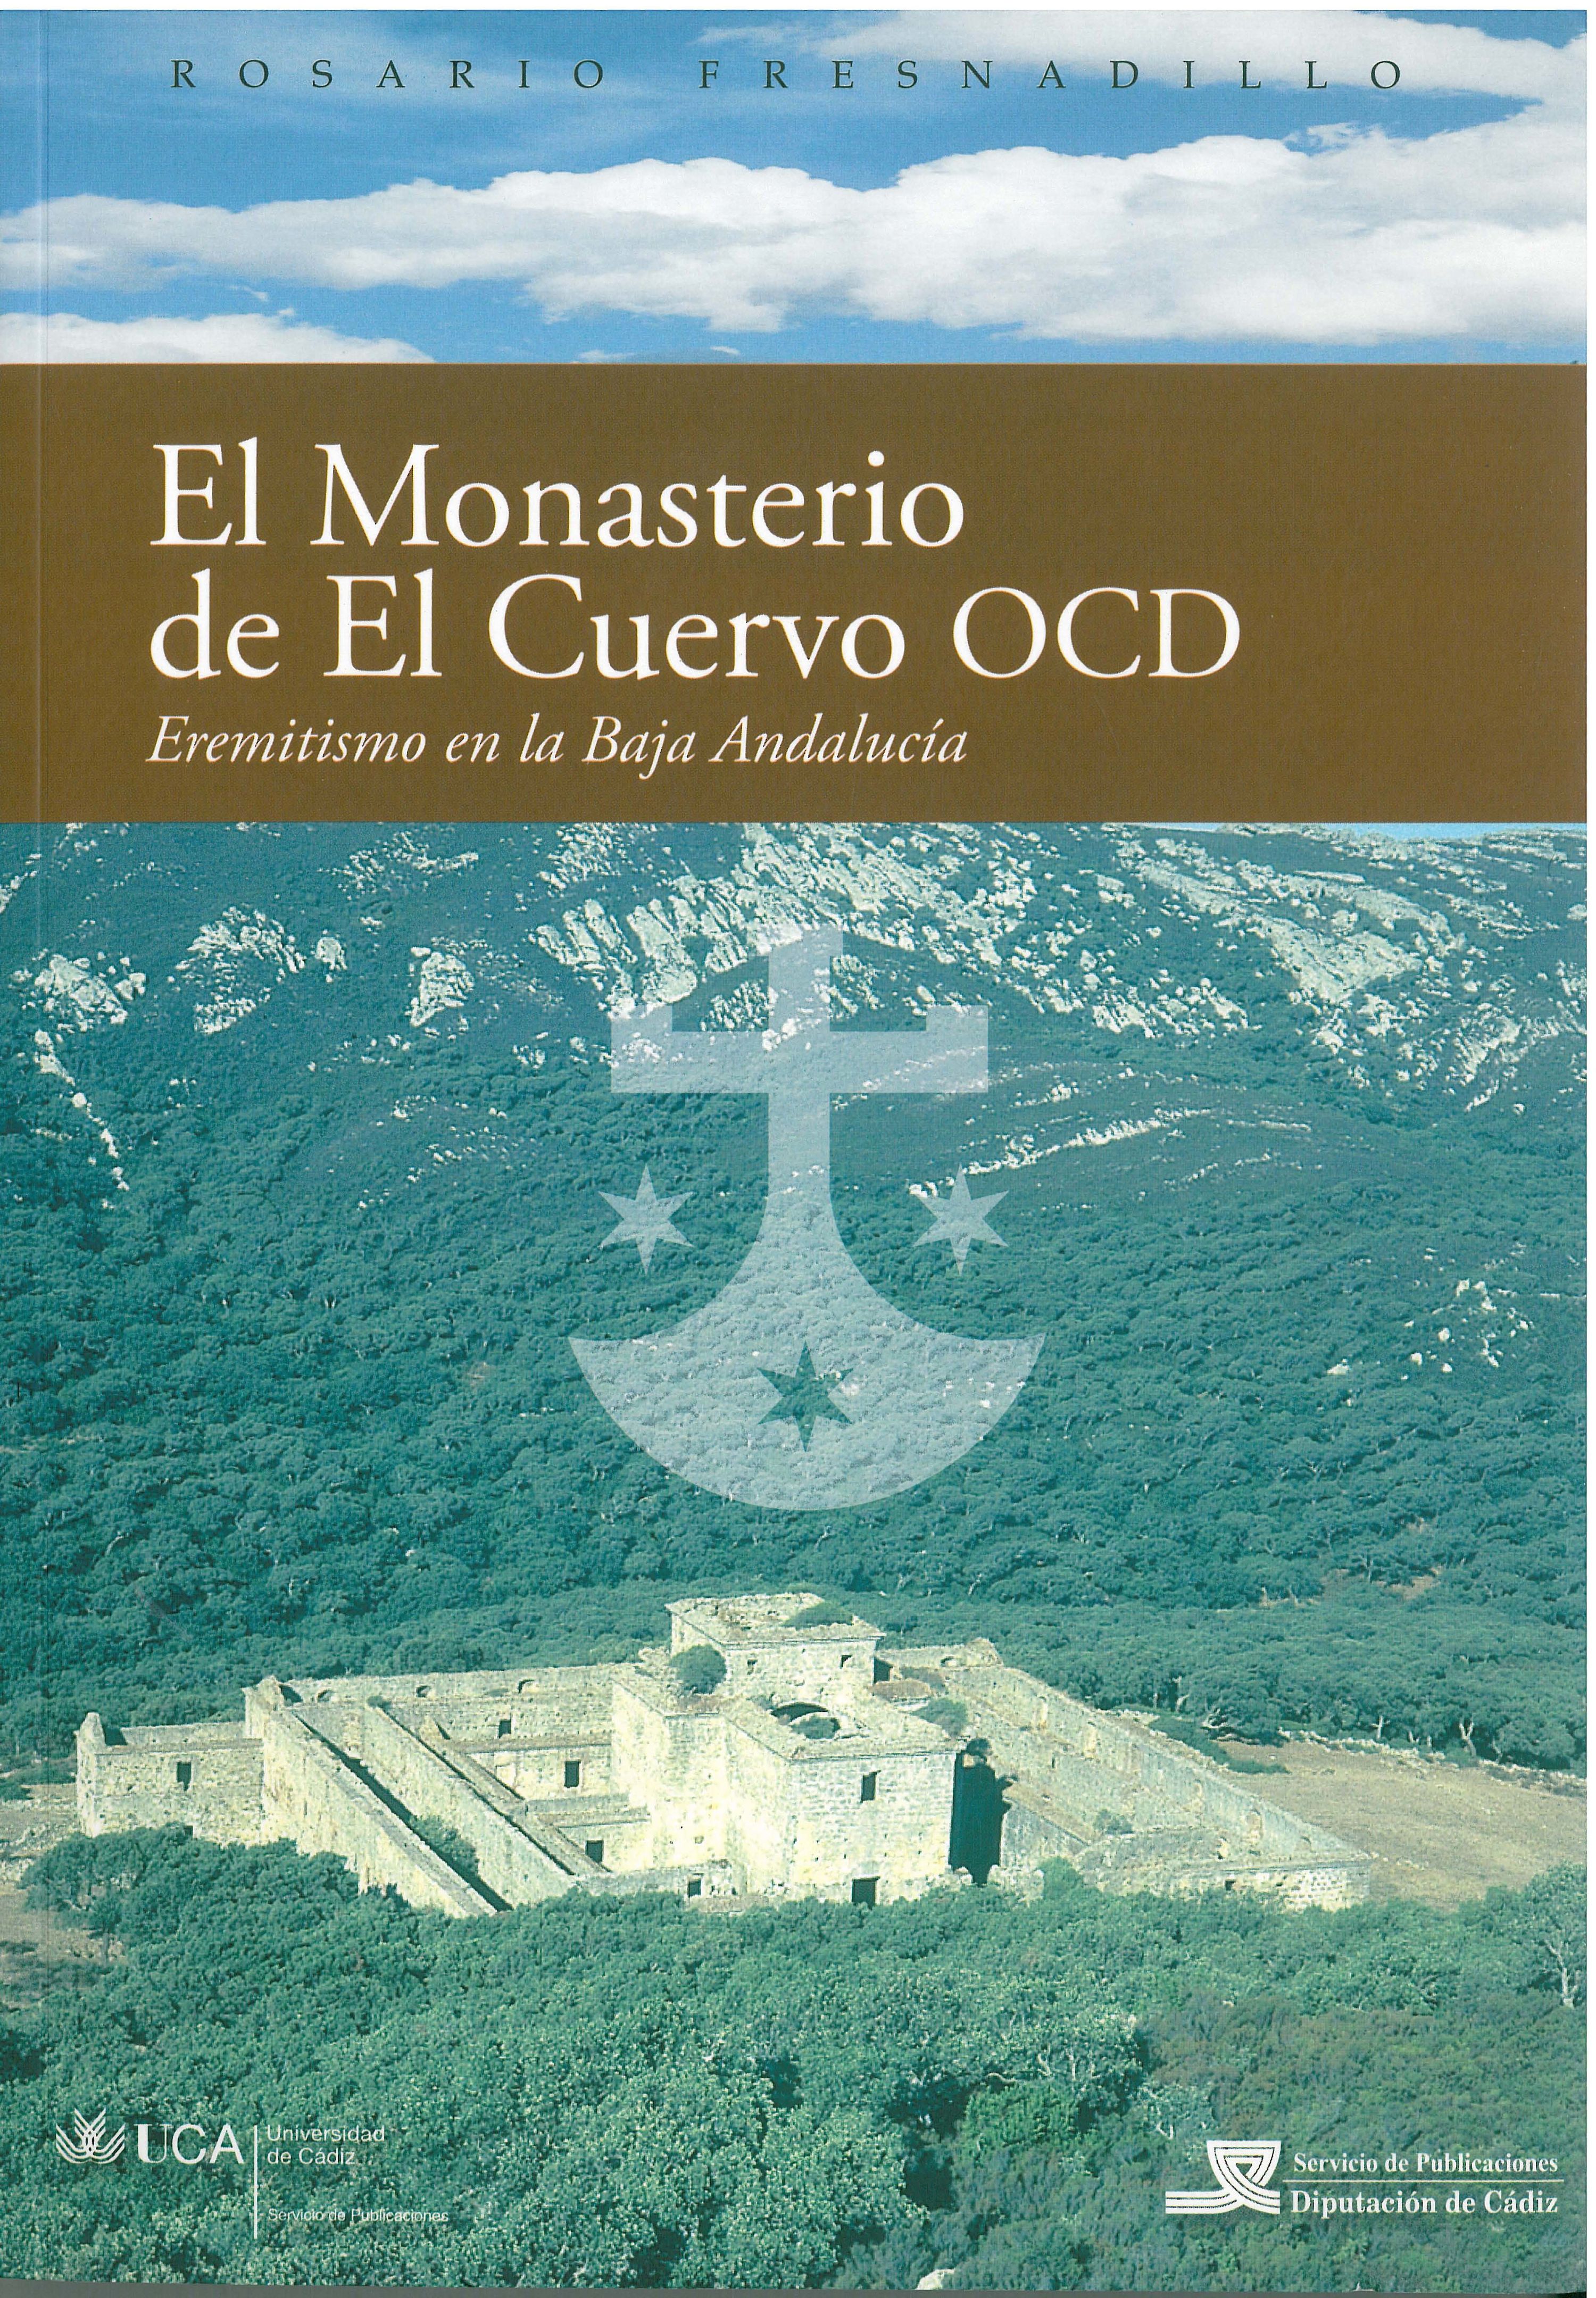 El monasterio de El Cuervo OCD